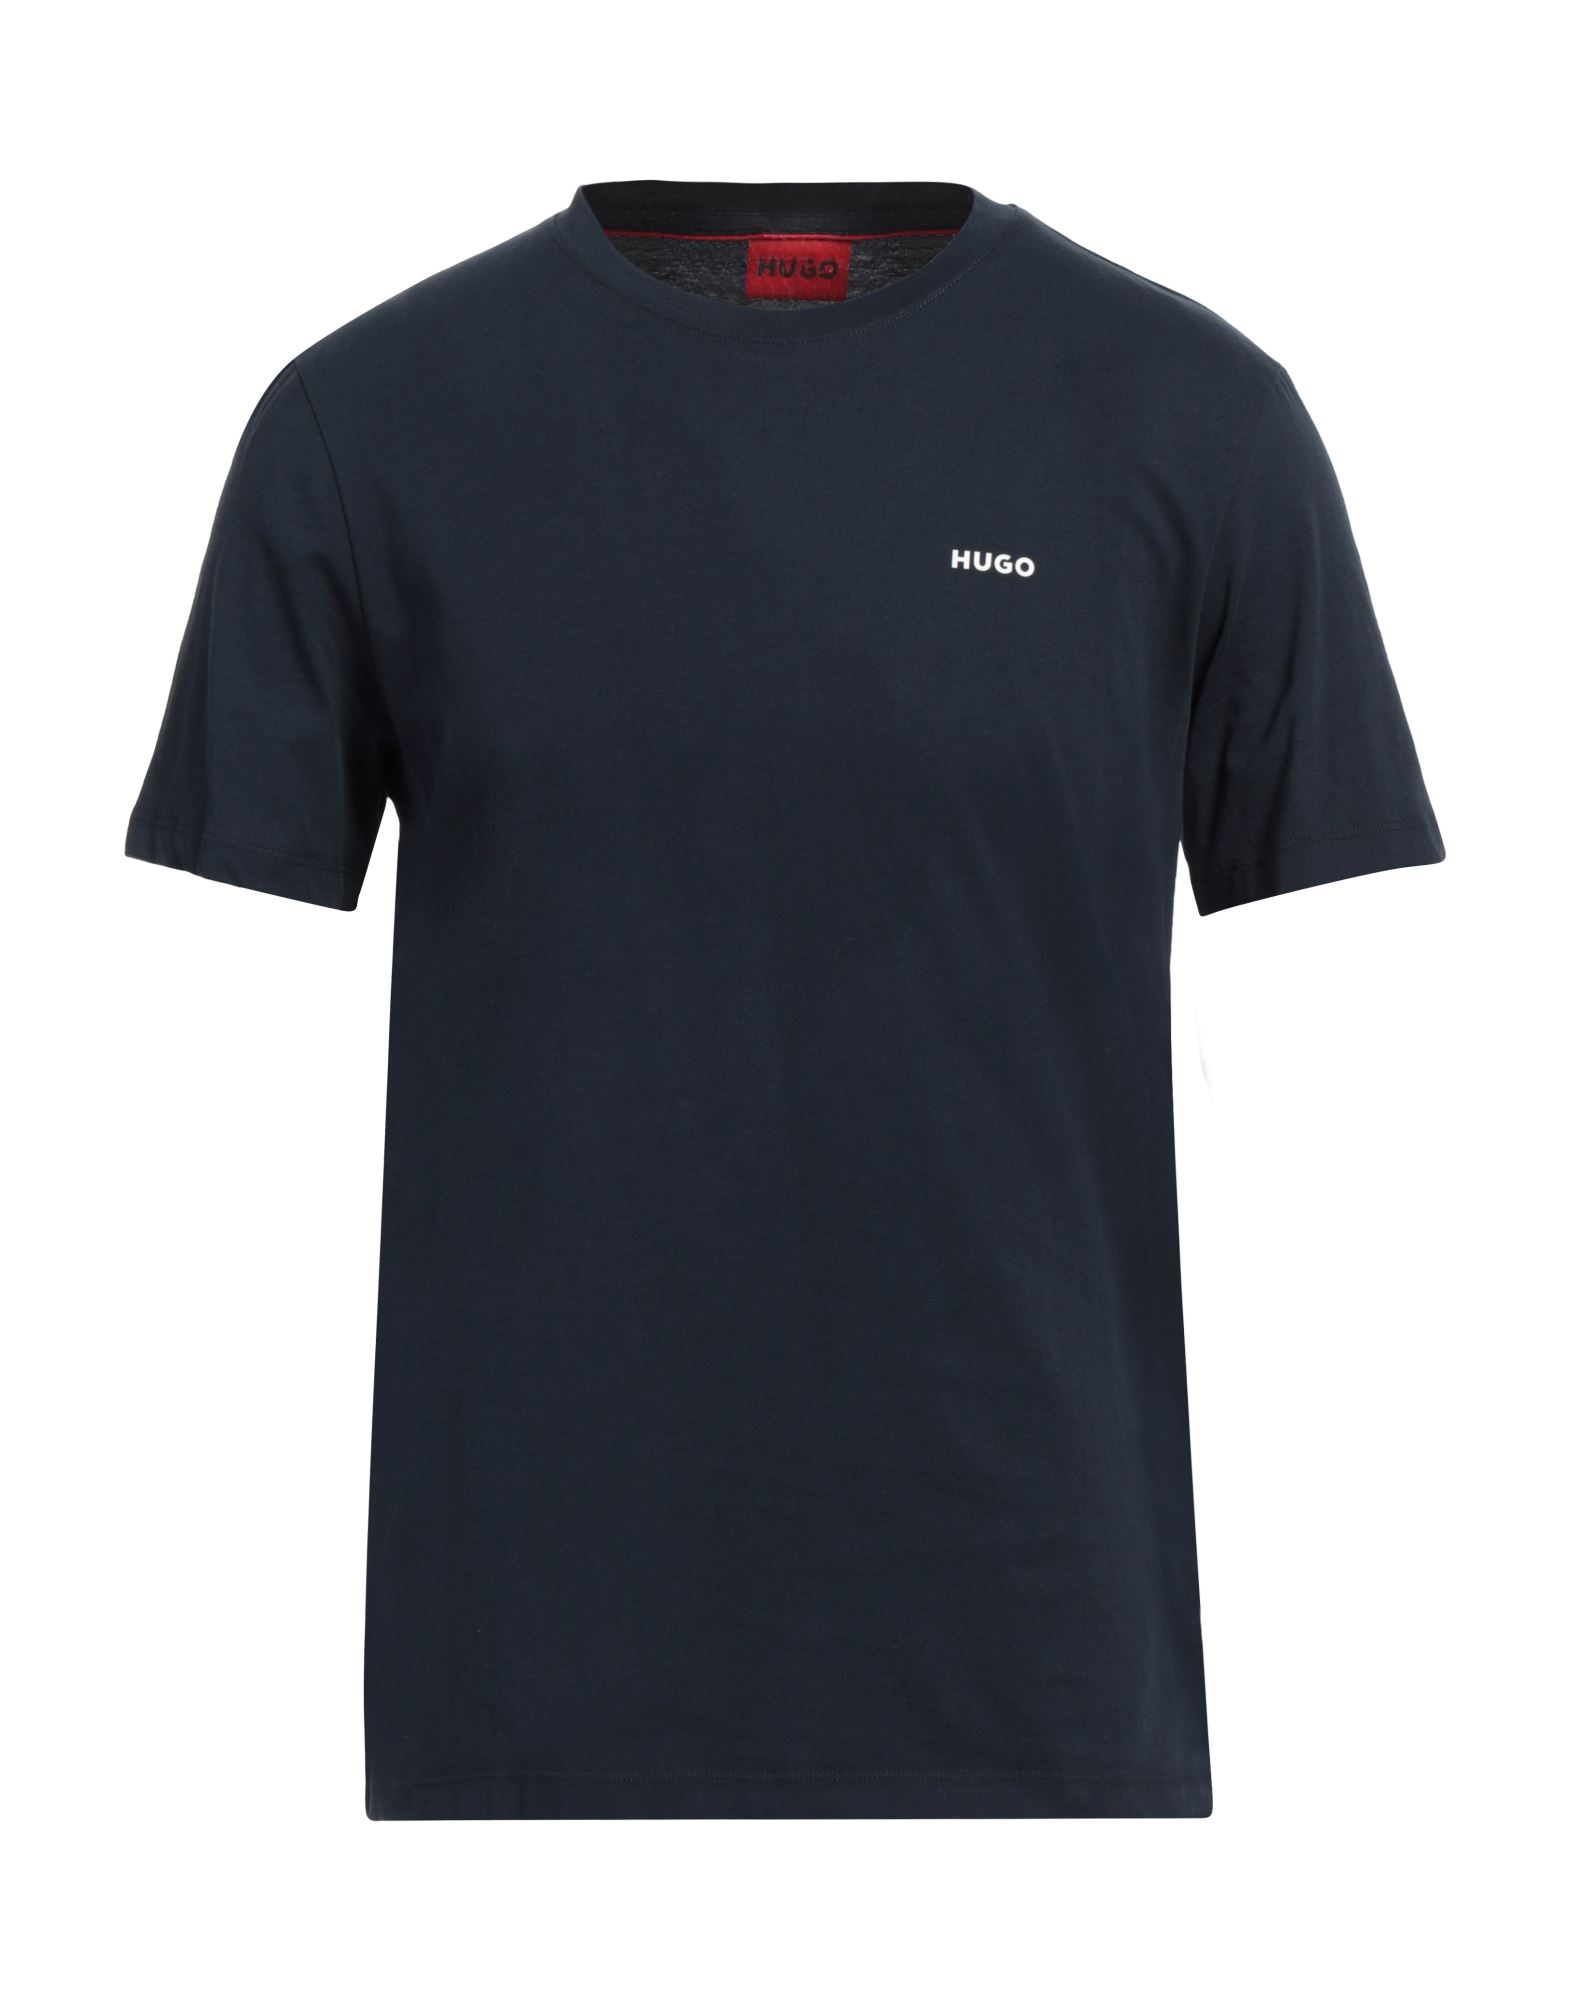 HUGO T-shirts Herren Nachtblau von HUGO